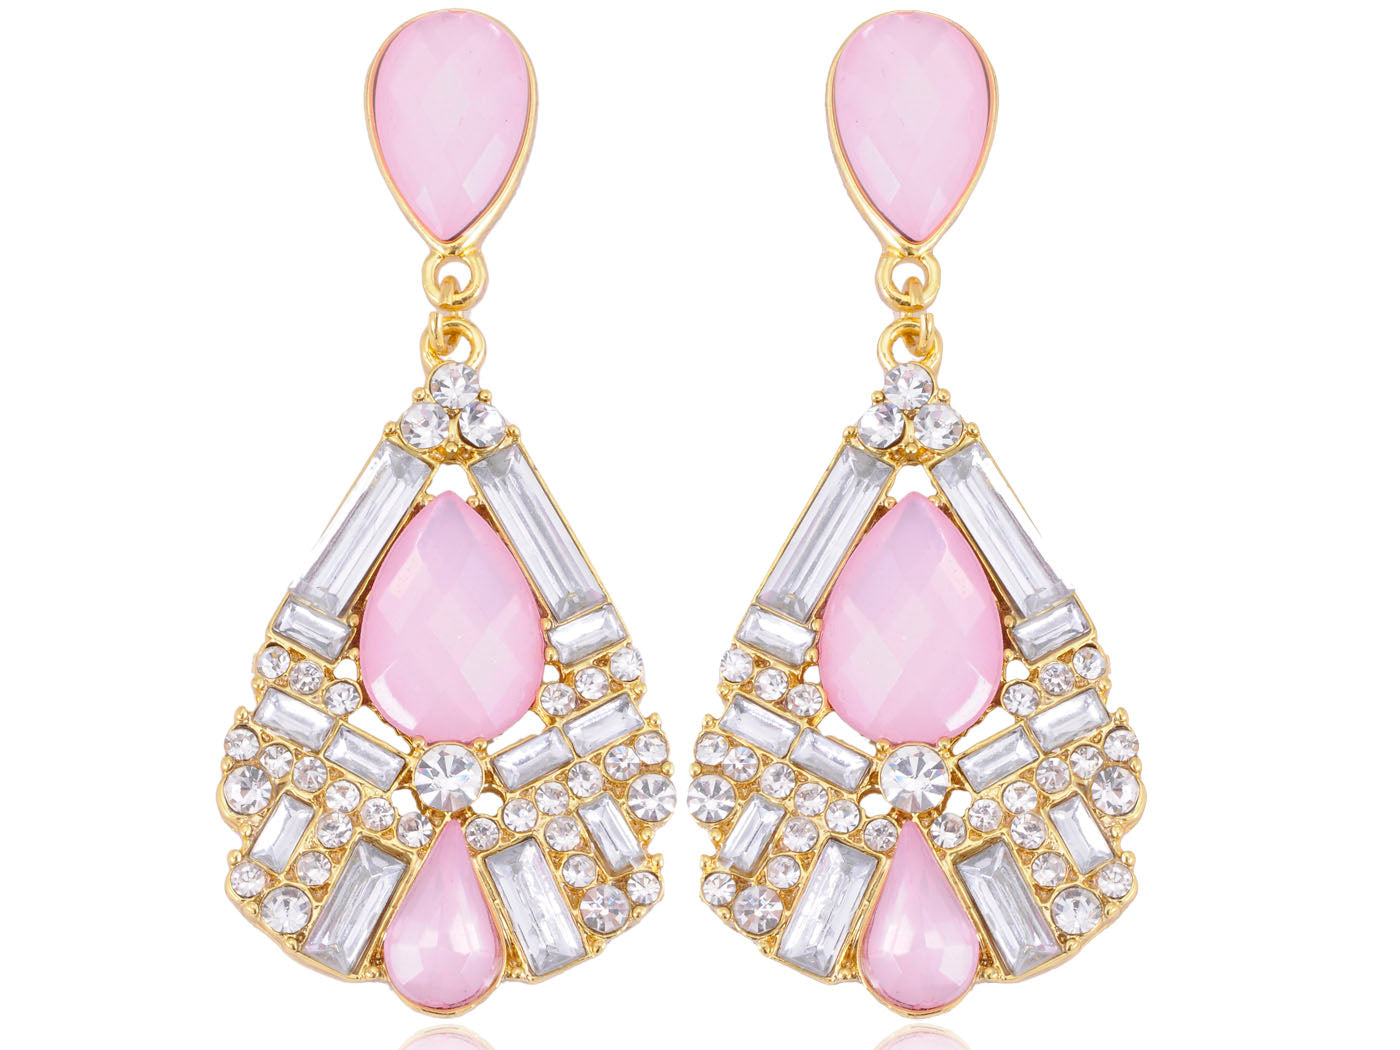 Light Pink Geometric Shape Teardrop Earrings